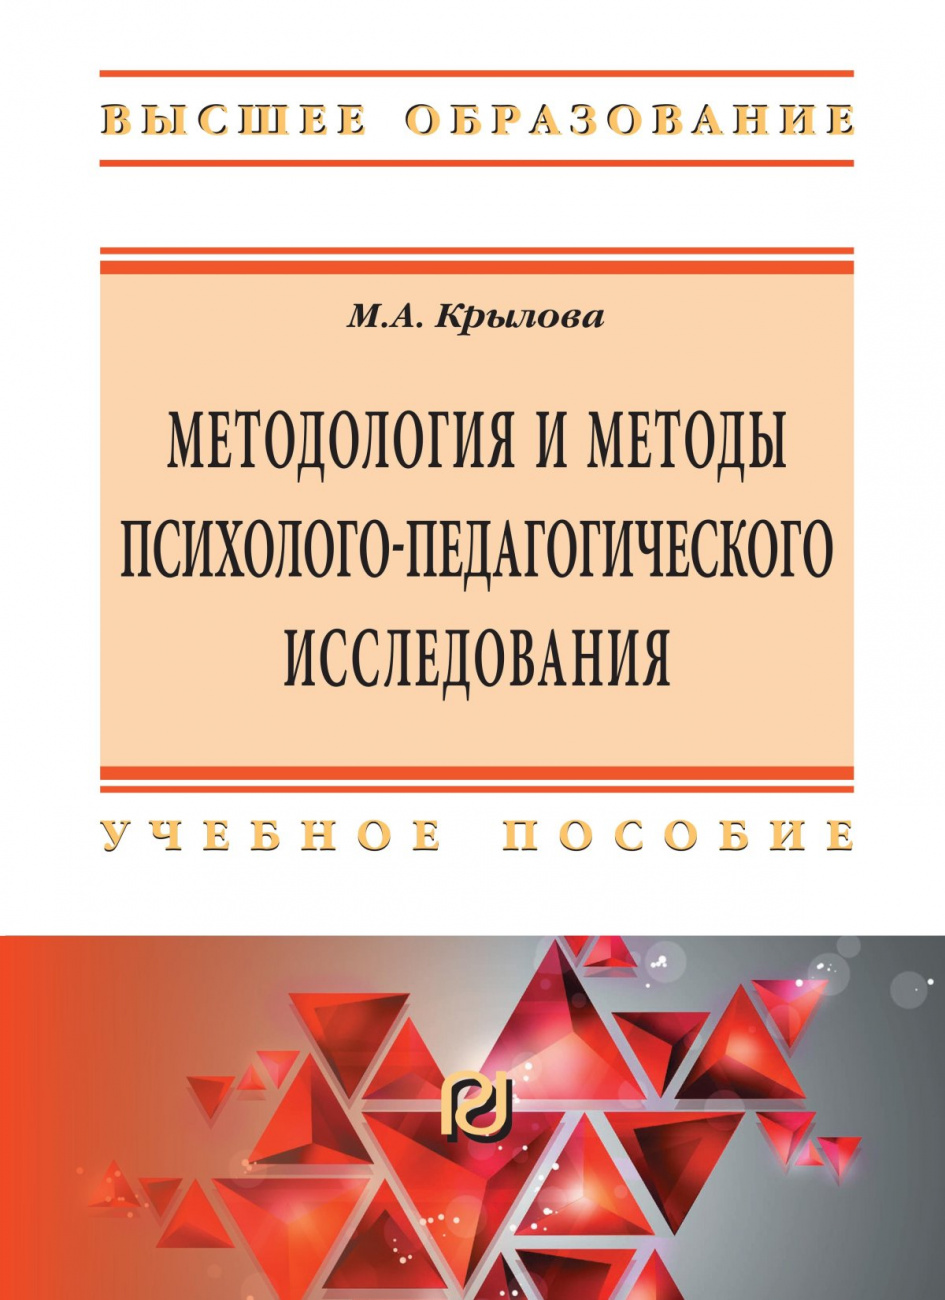 Методология и методы психолого-педагогического исследования: основы теории и практики